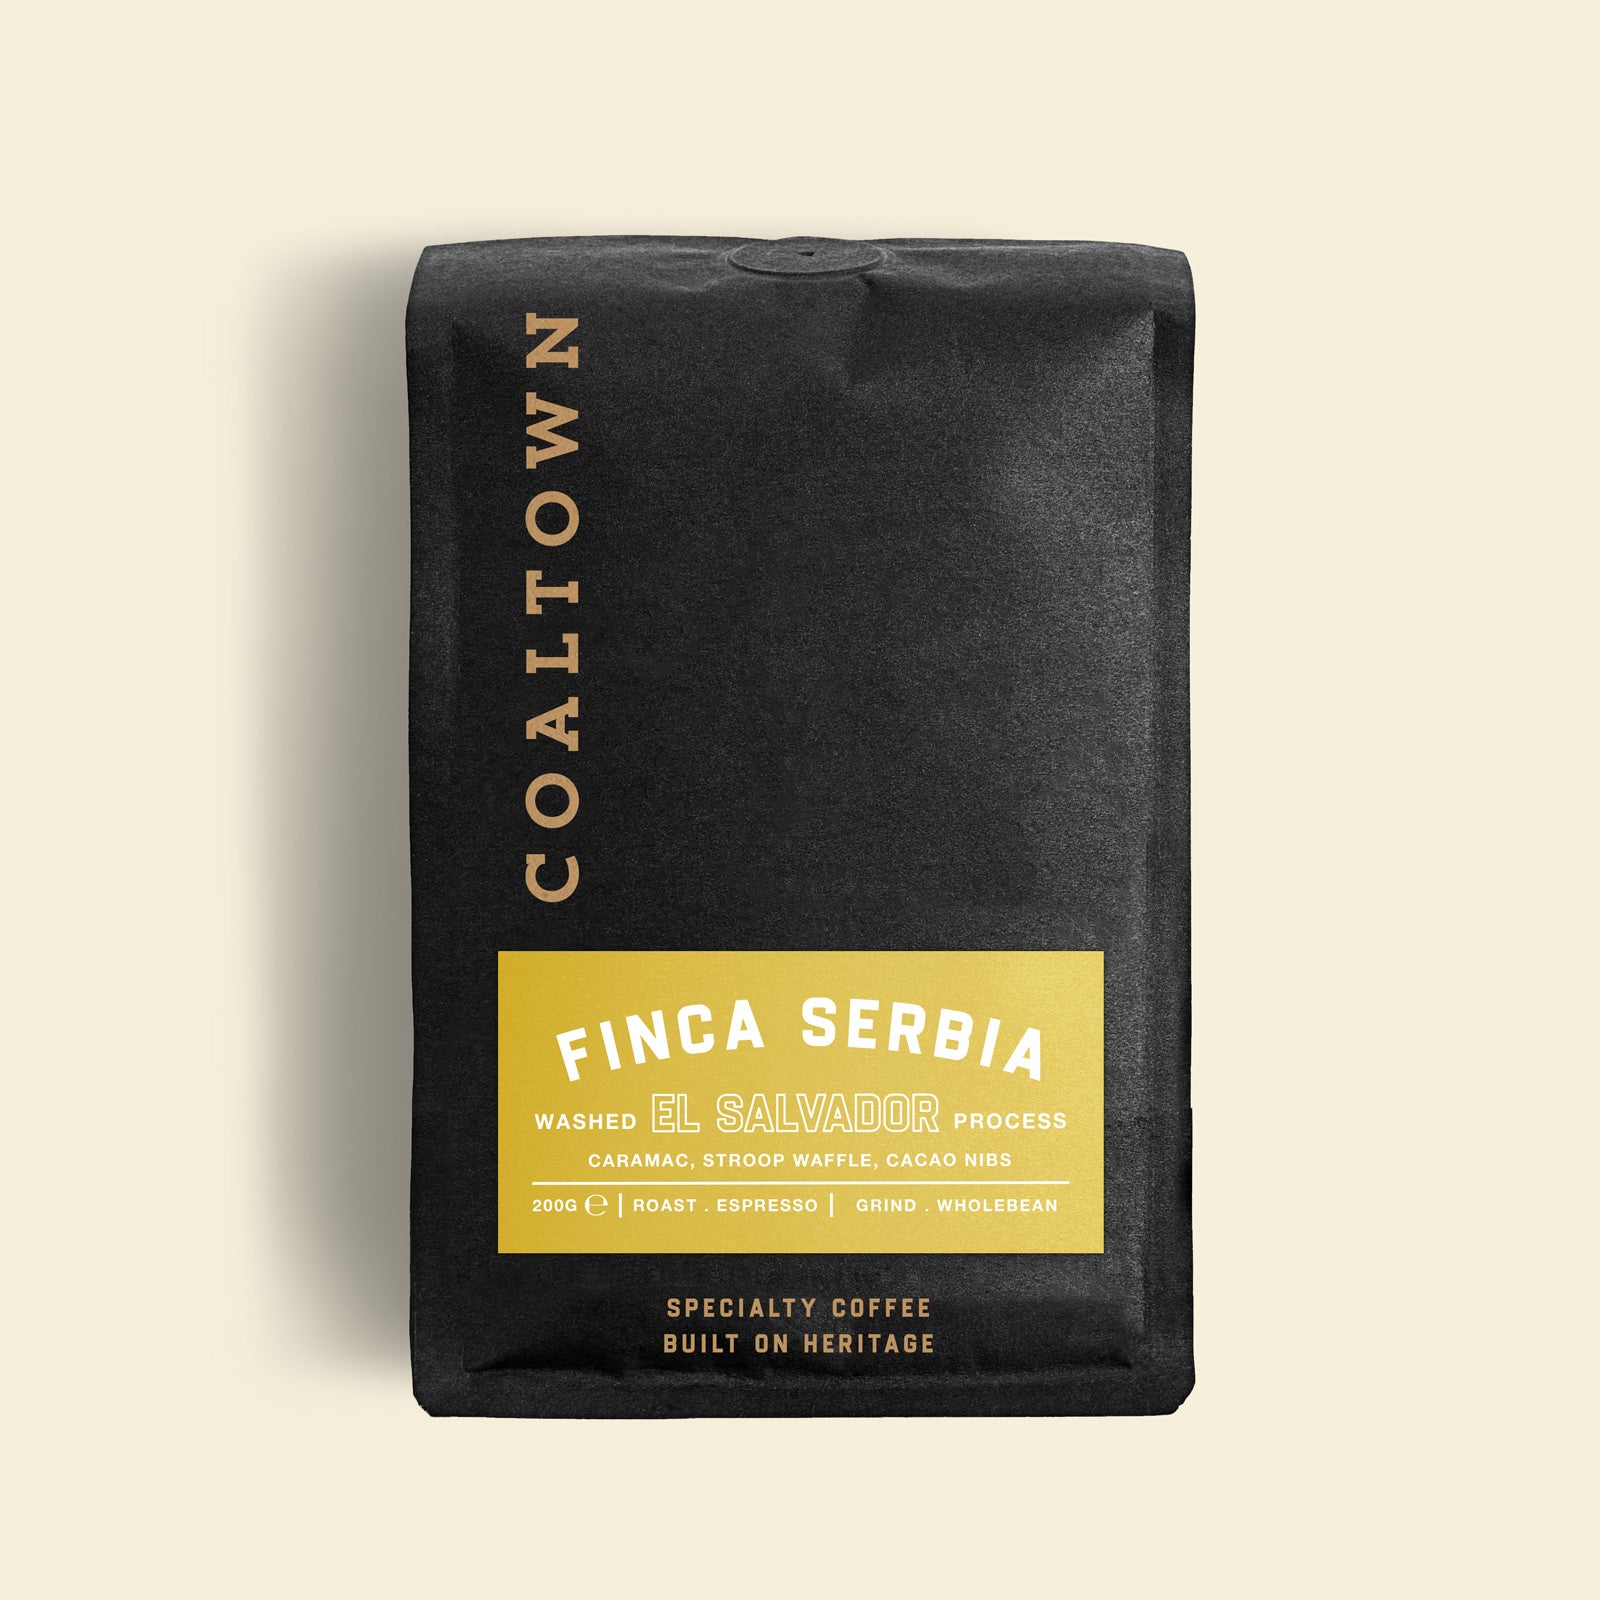 Finca-Serbia-El-Salvador-Single-Origin-Coffee-200g-Bag